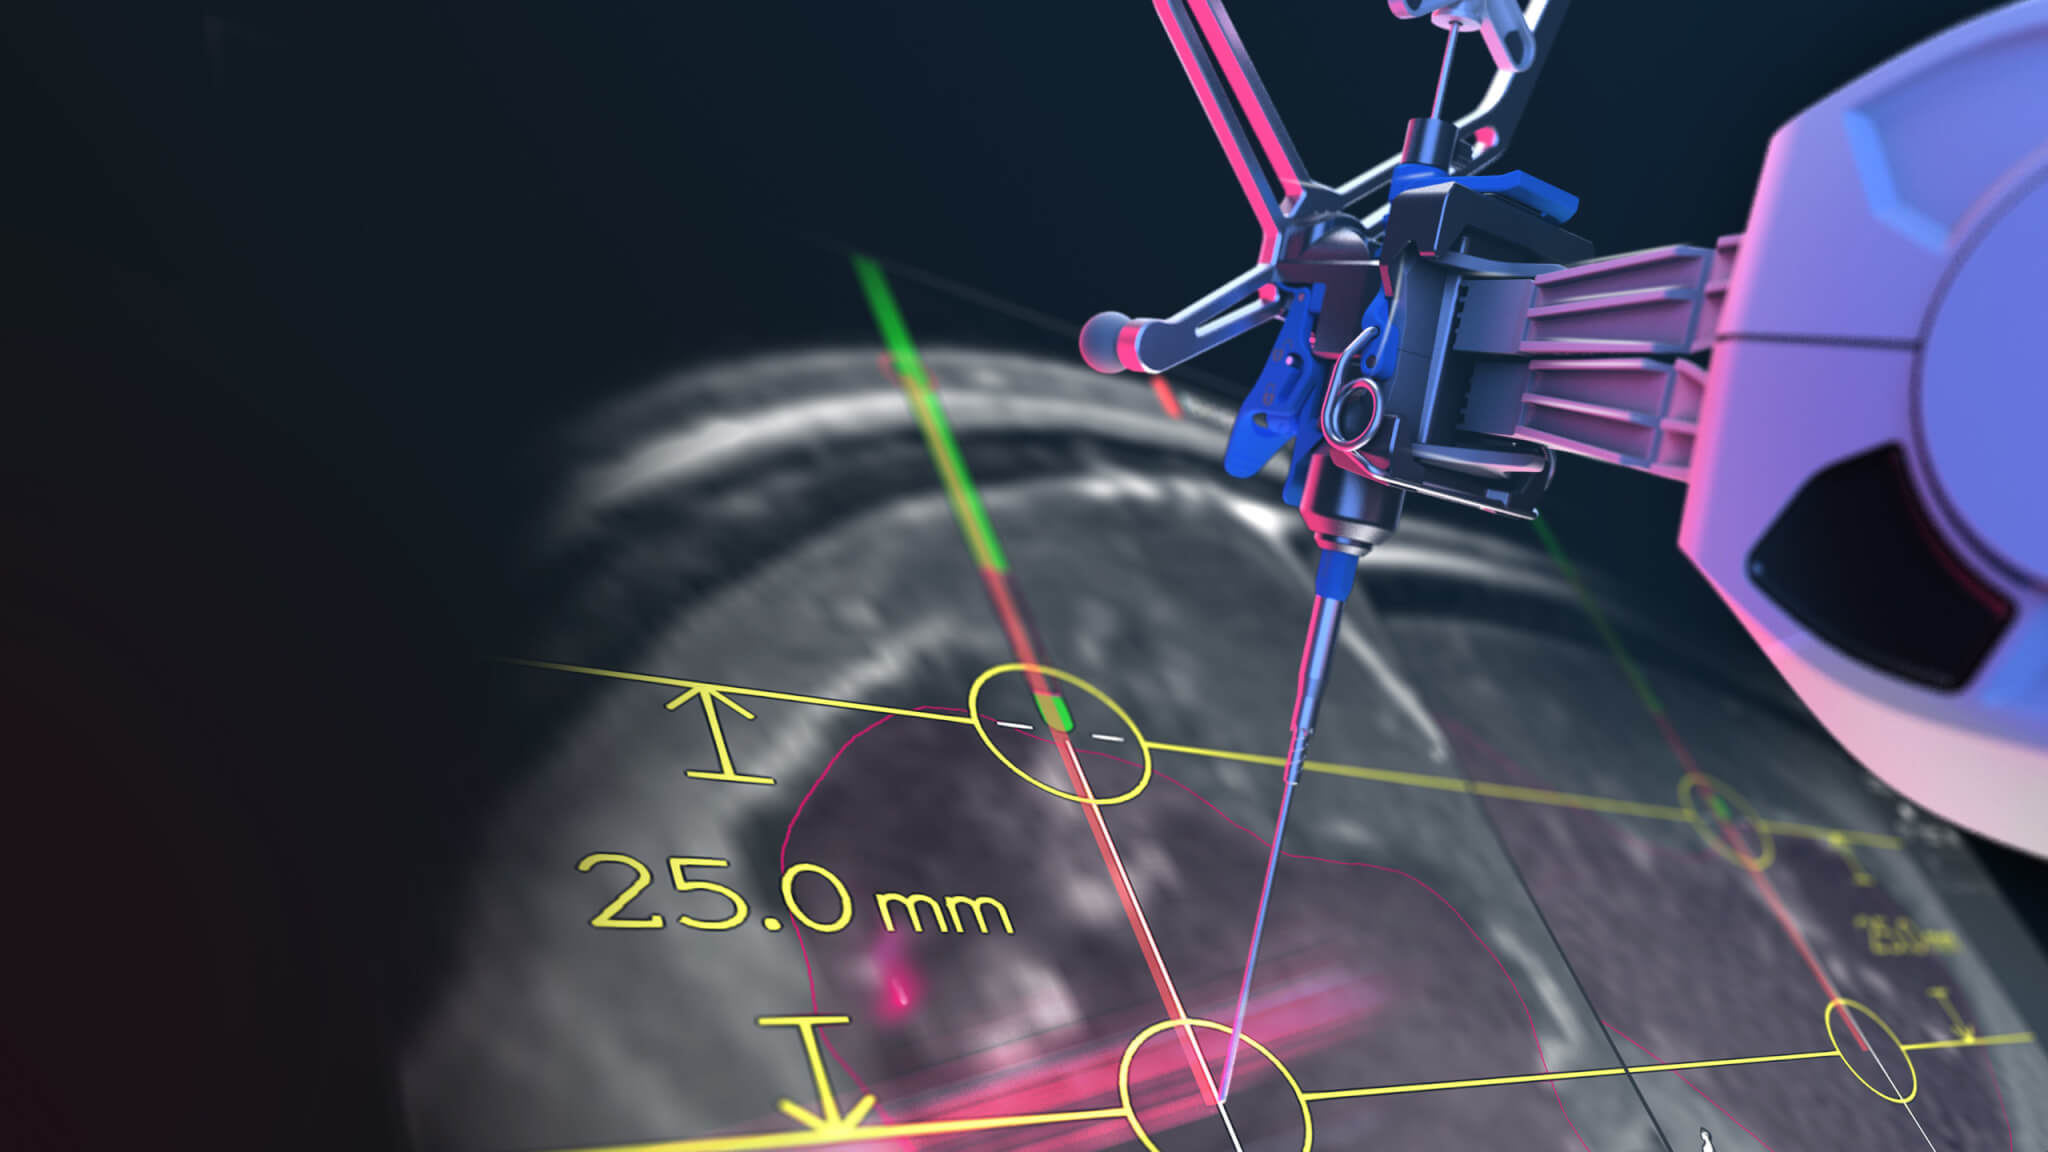 Un brazo quirúrgico craneal de Cirq robotic apunta a una representación renderizada de una pantalla de software de navegación quirúrgica